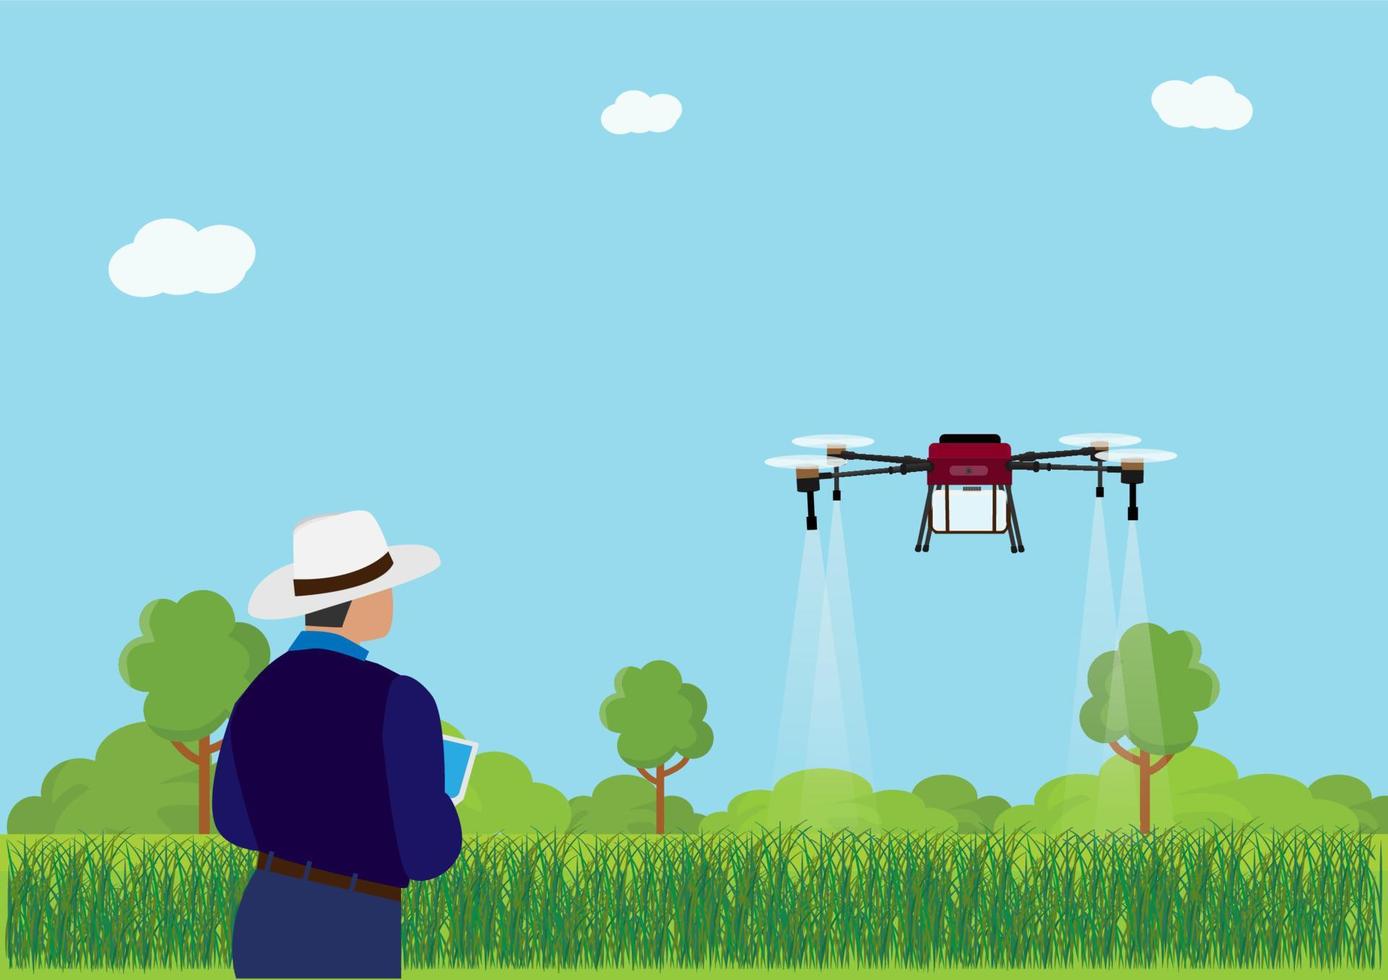 boeren controleren het gebruik van drones om kunstmest op rijstvelden te spuiten. landbouw technologie innovatie concept vectorillustratie vector